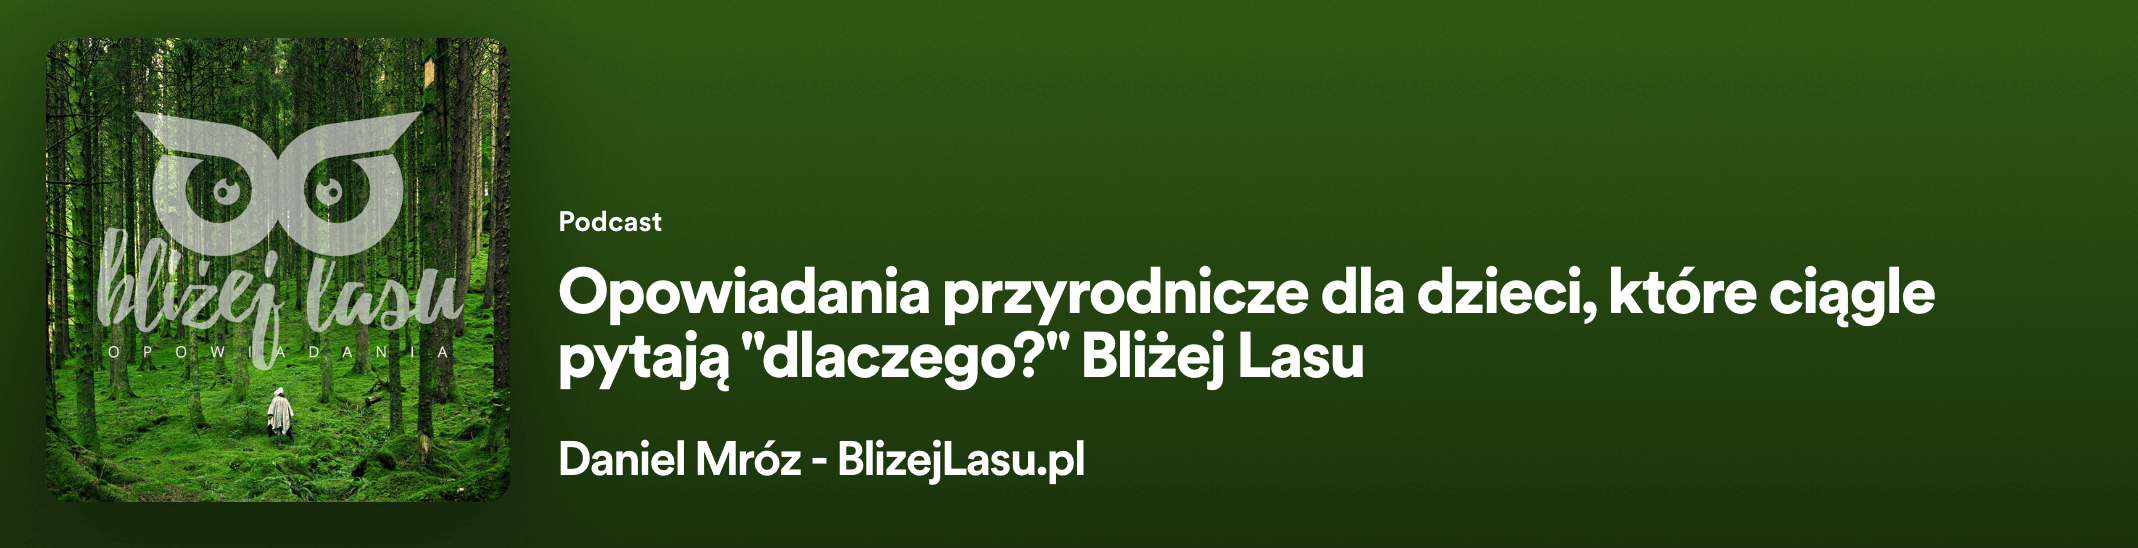 podcast BlizejLasu.pl